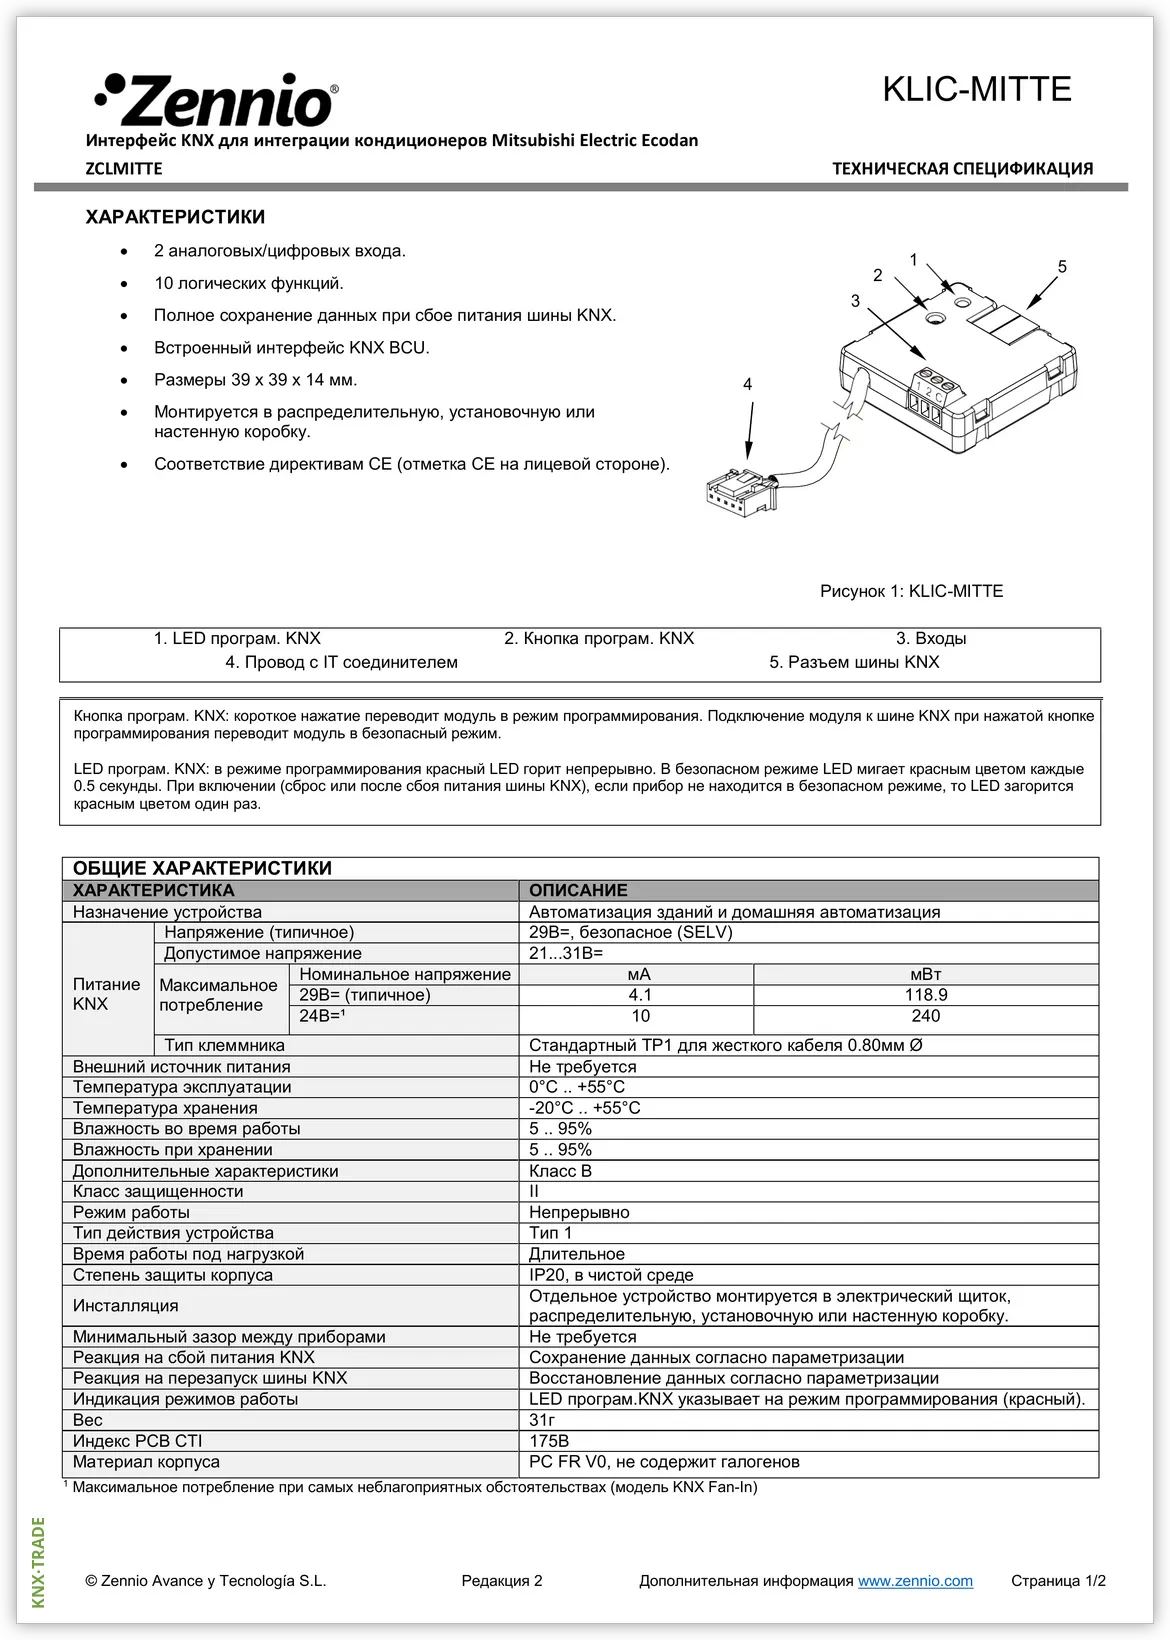 Datasheet (1) Zennio [ZCLMITTE] KLIC-MITTE / Шлюз KNX-Mitsubishi Electric Ecodan